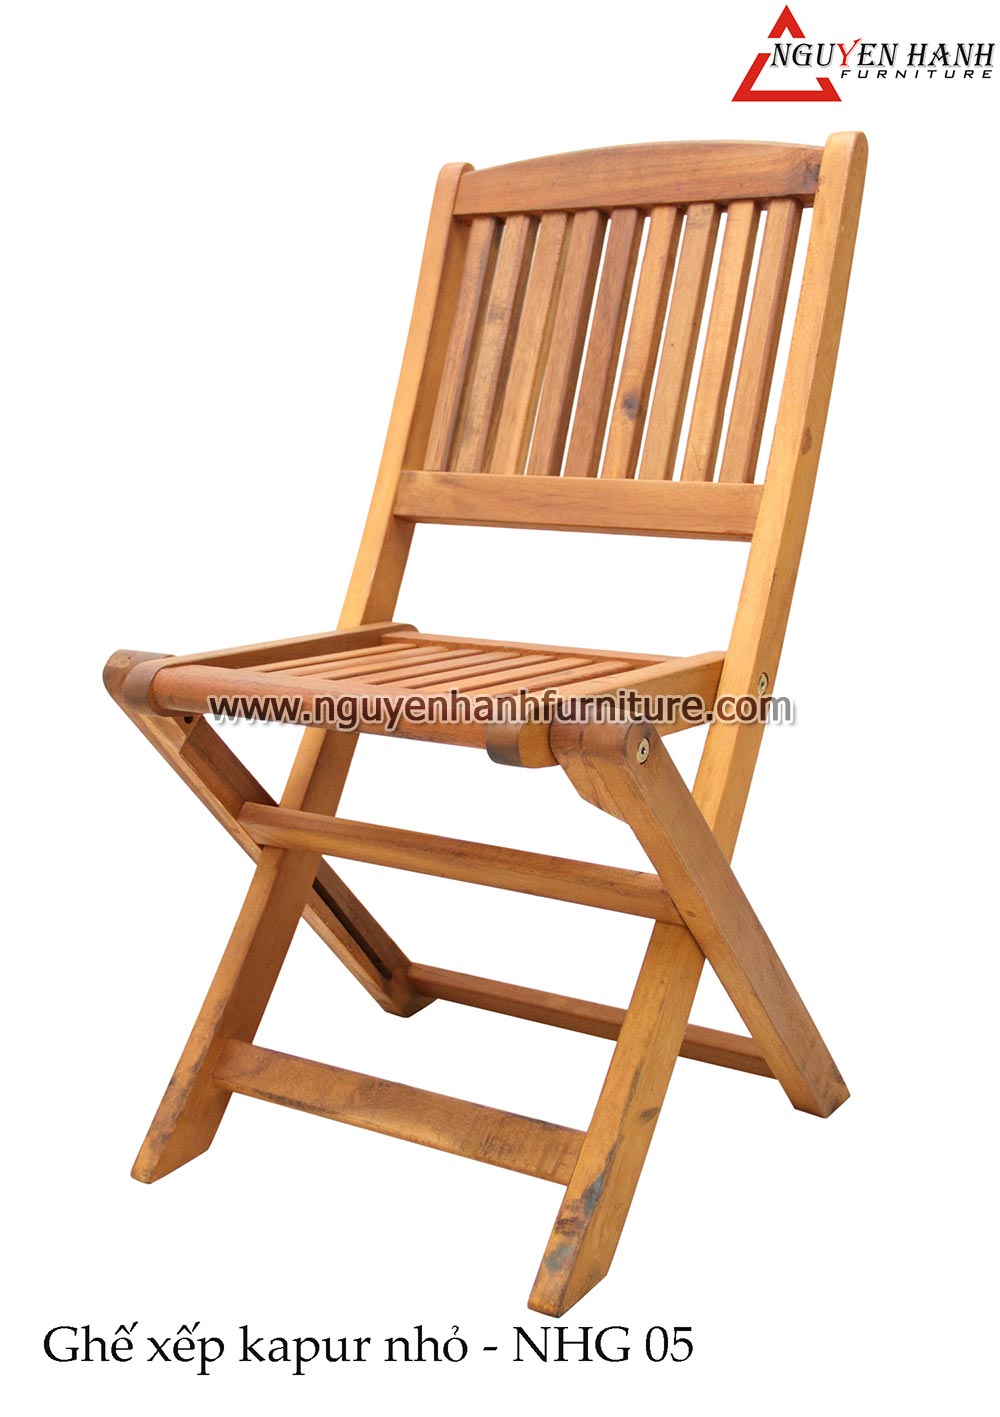 Name product: Small kapur chair NHG05 